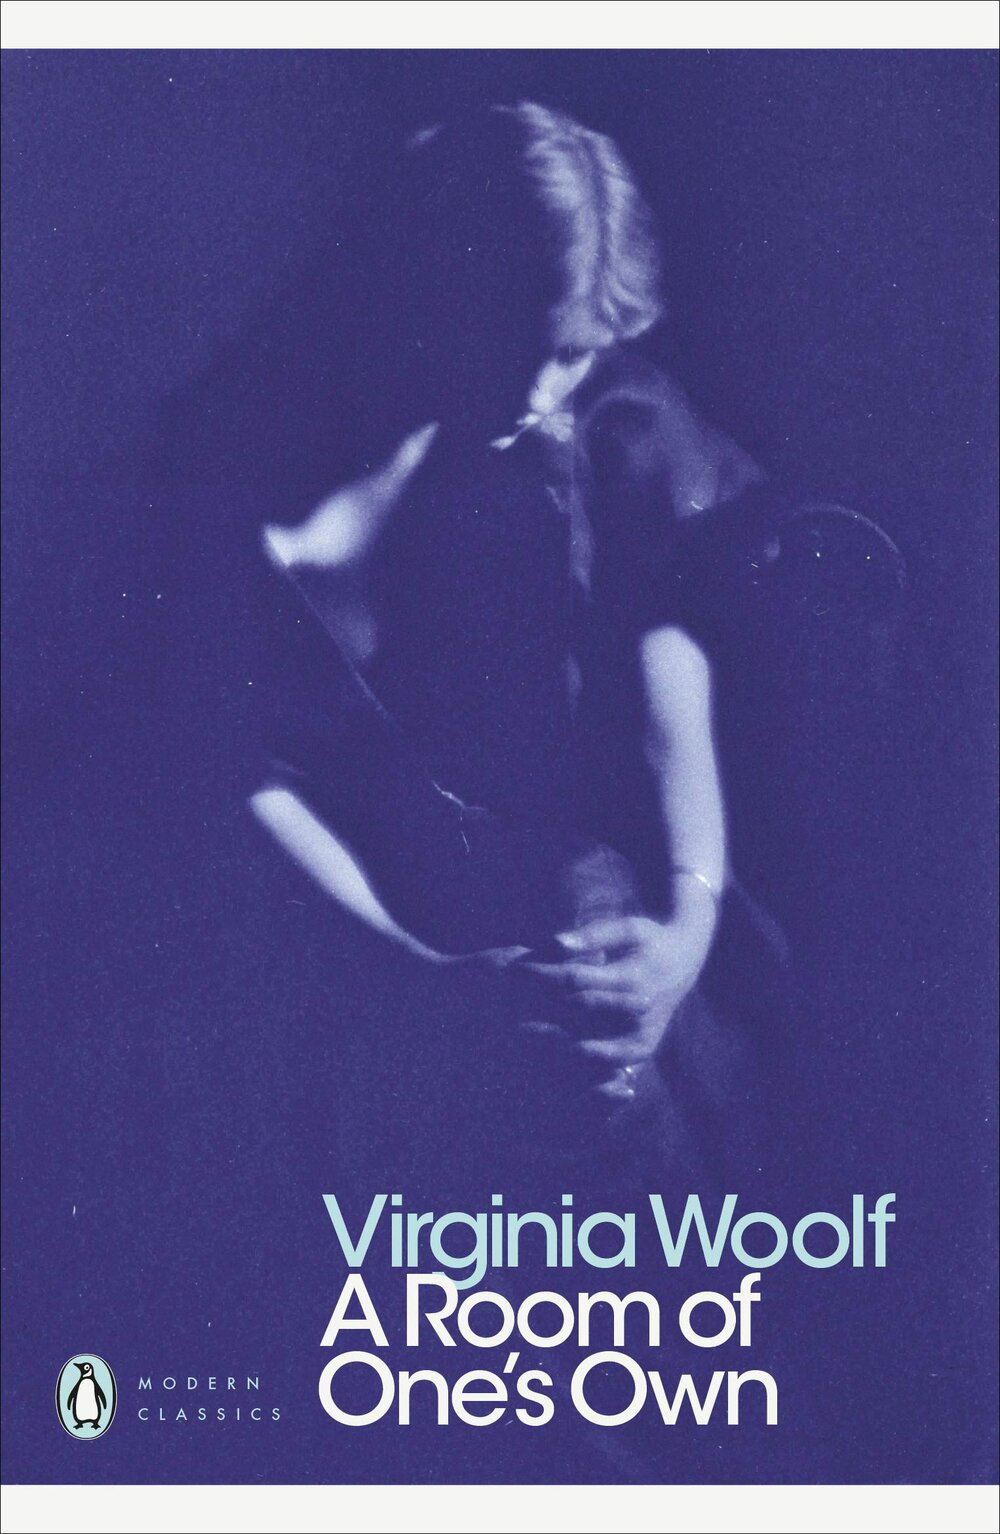 A Room of Ones Own by Virginia Woolf.jpg